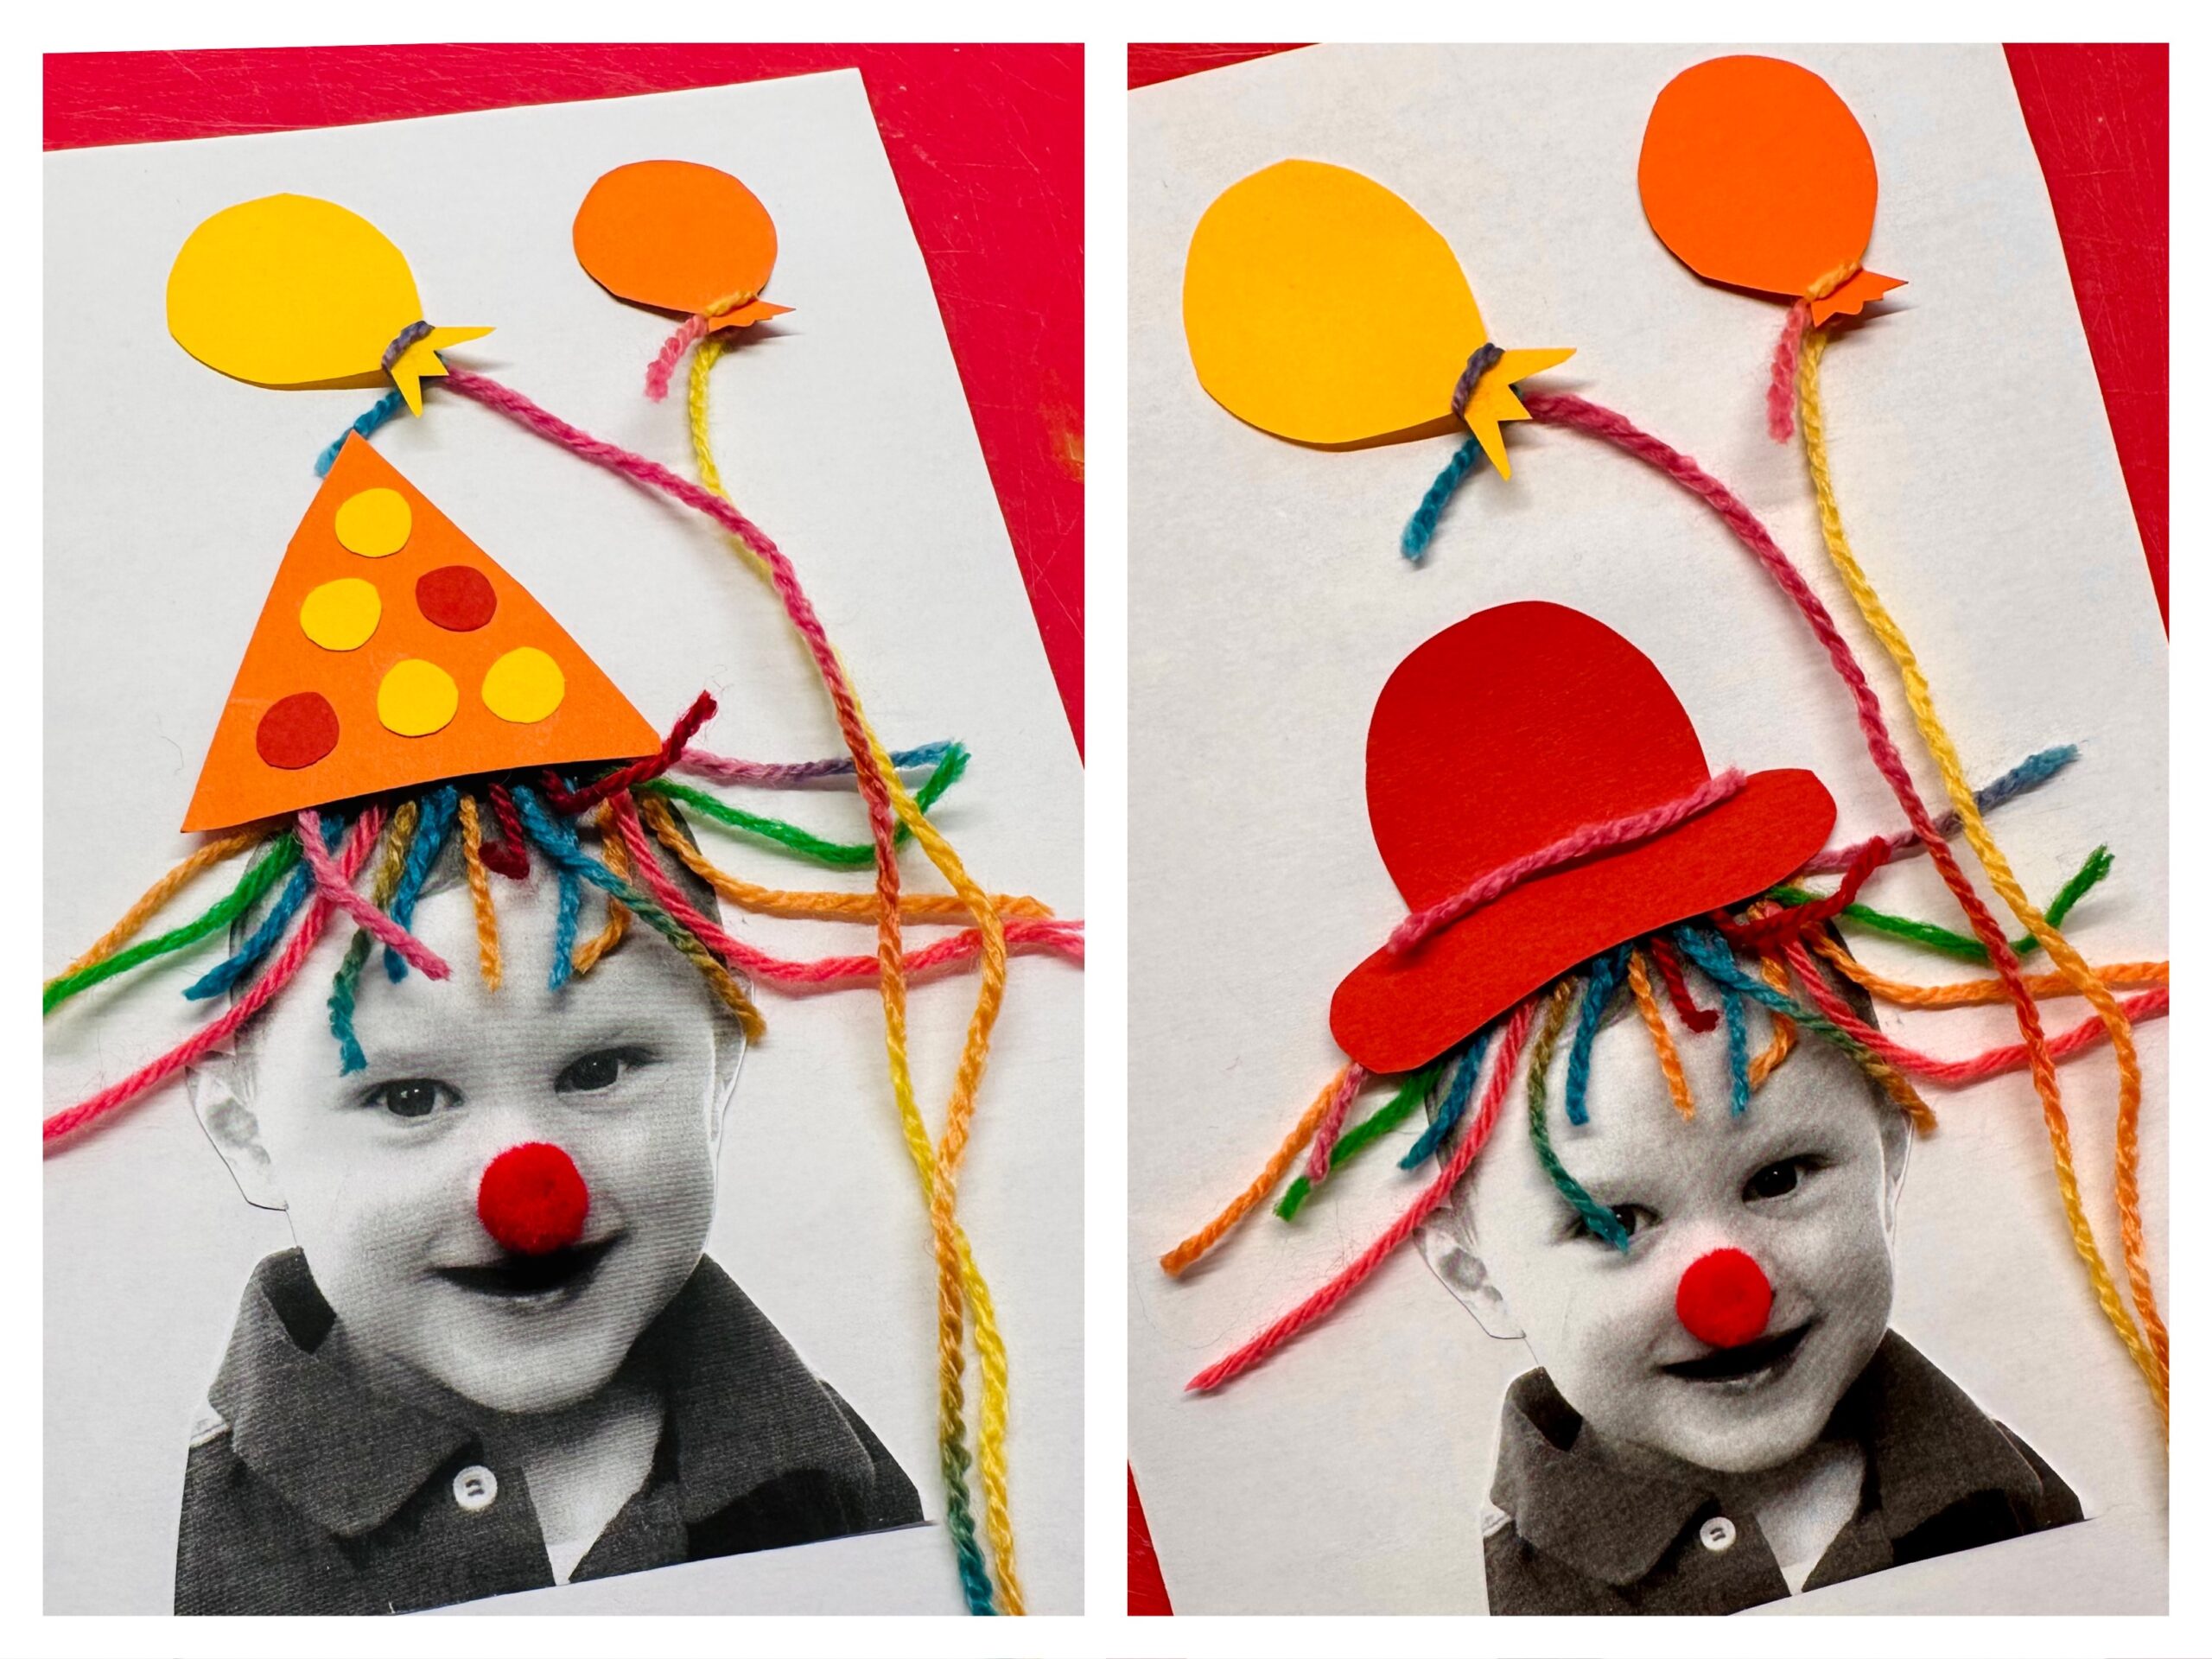 Bild zum Schritt 26 für das Bastel- und DIY-Abenteuer für Kinder: 'So habt ihr zwei tolle Varianten für eure Einladungskarte oder...'